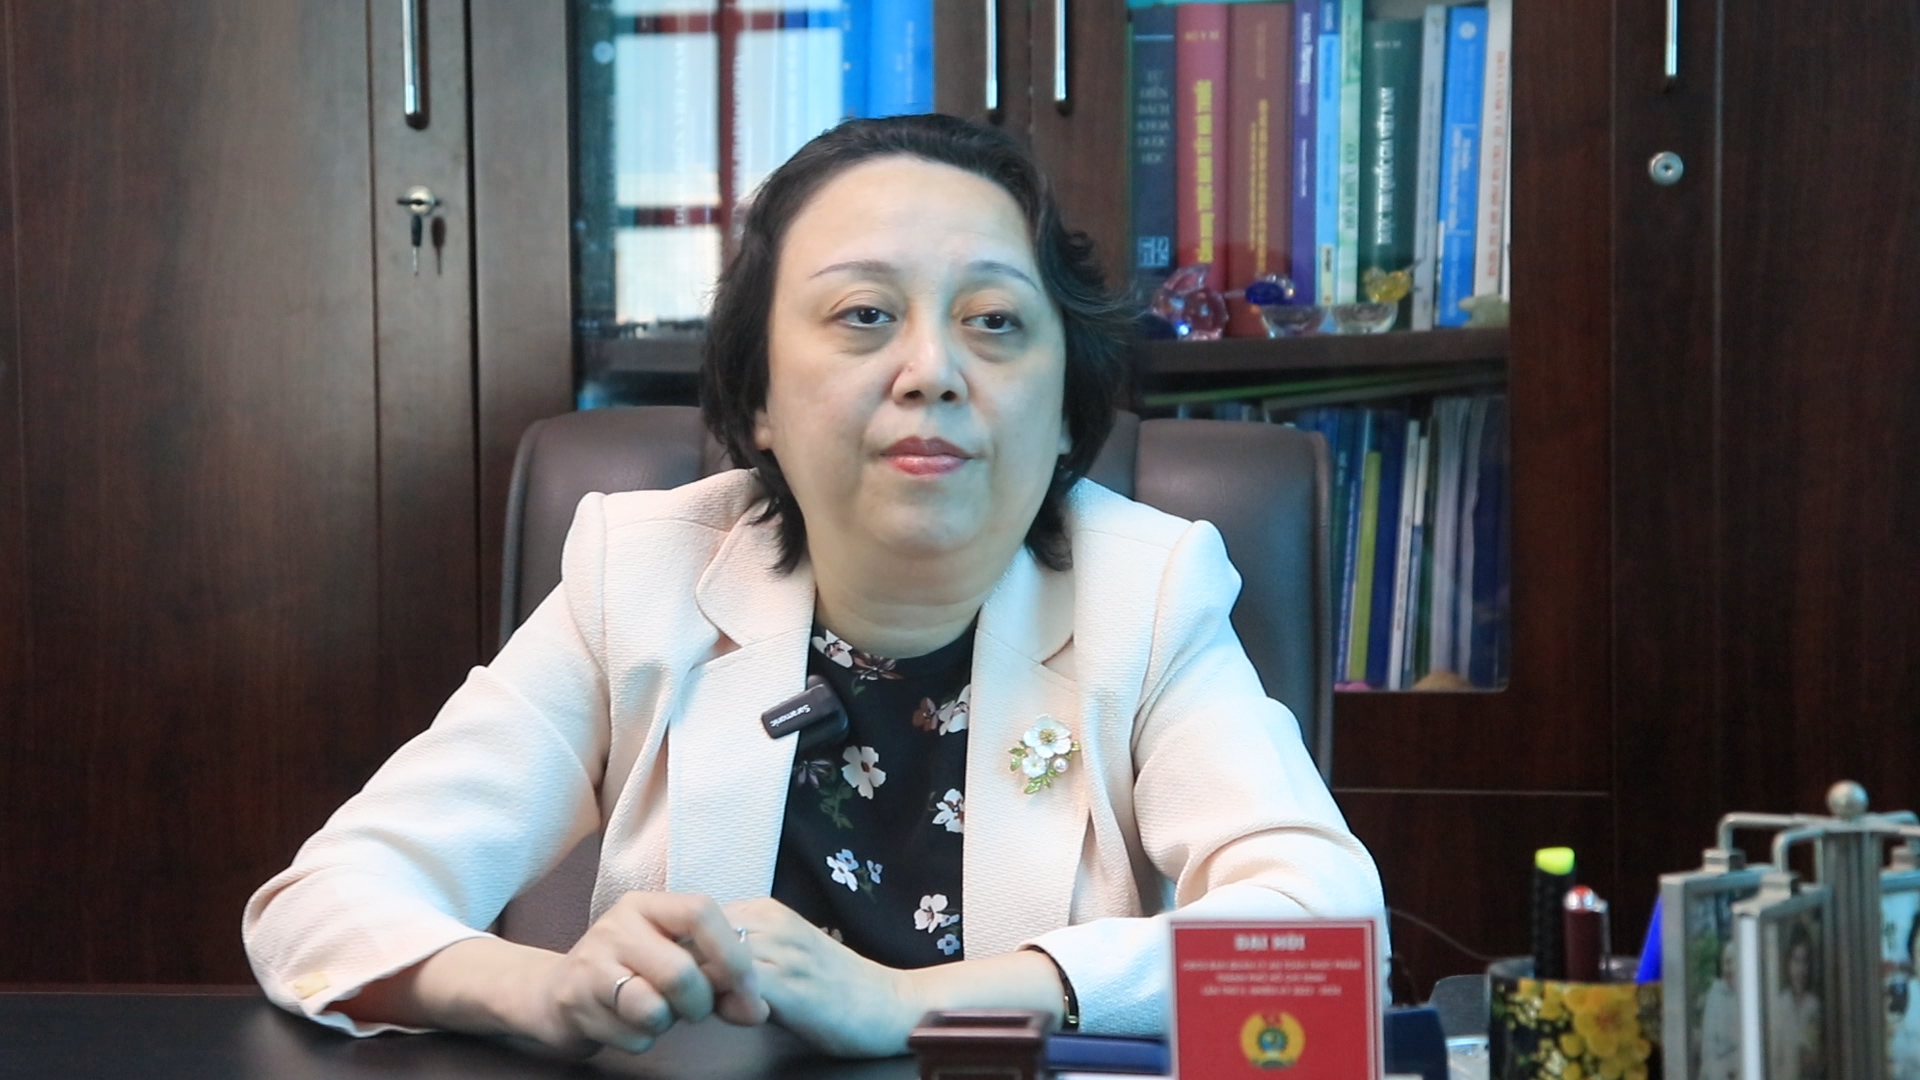 Bà Phạm Khánh Phong Lan: Vệ sinh an toàn thực phẩm ở gia đình, cẩn trọng ngay từ lúc mua- Ảnh 1.